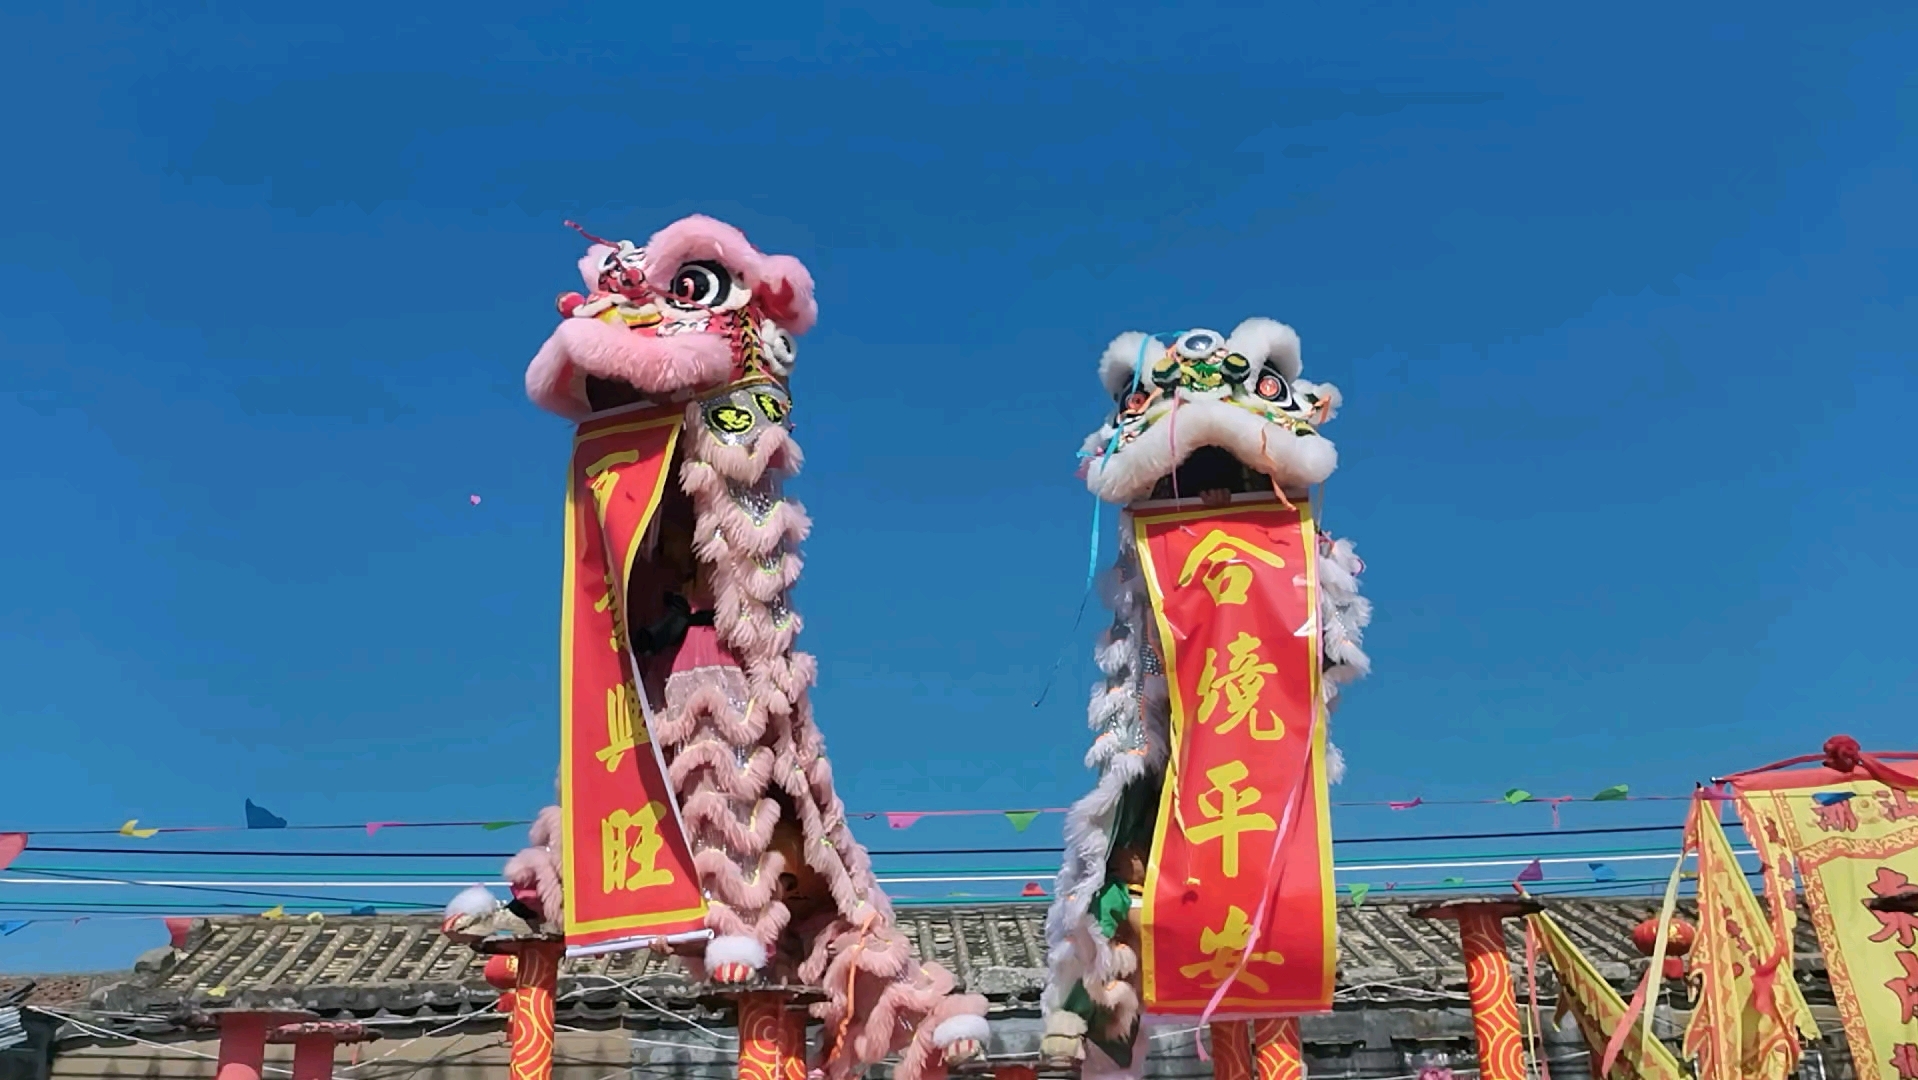 潮汕文化,舞狮子!感受传统狮舞的魅力